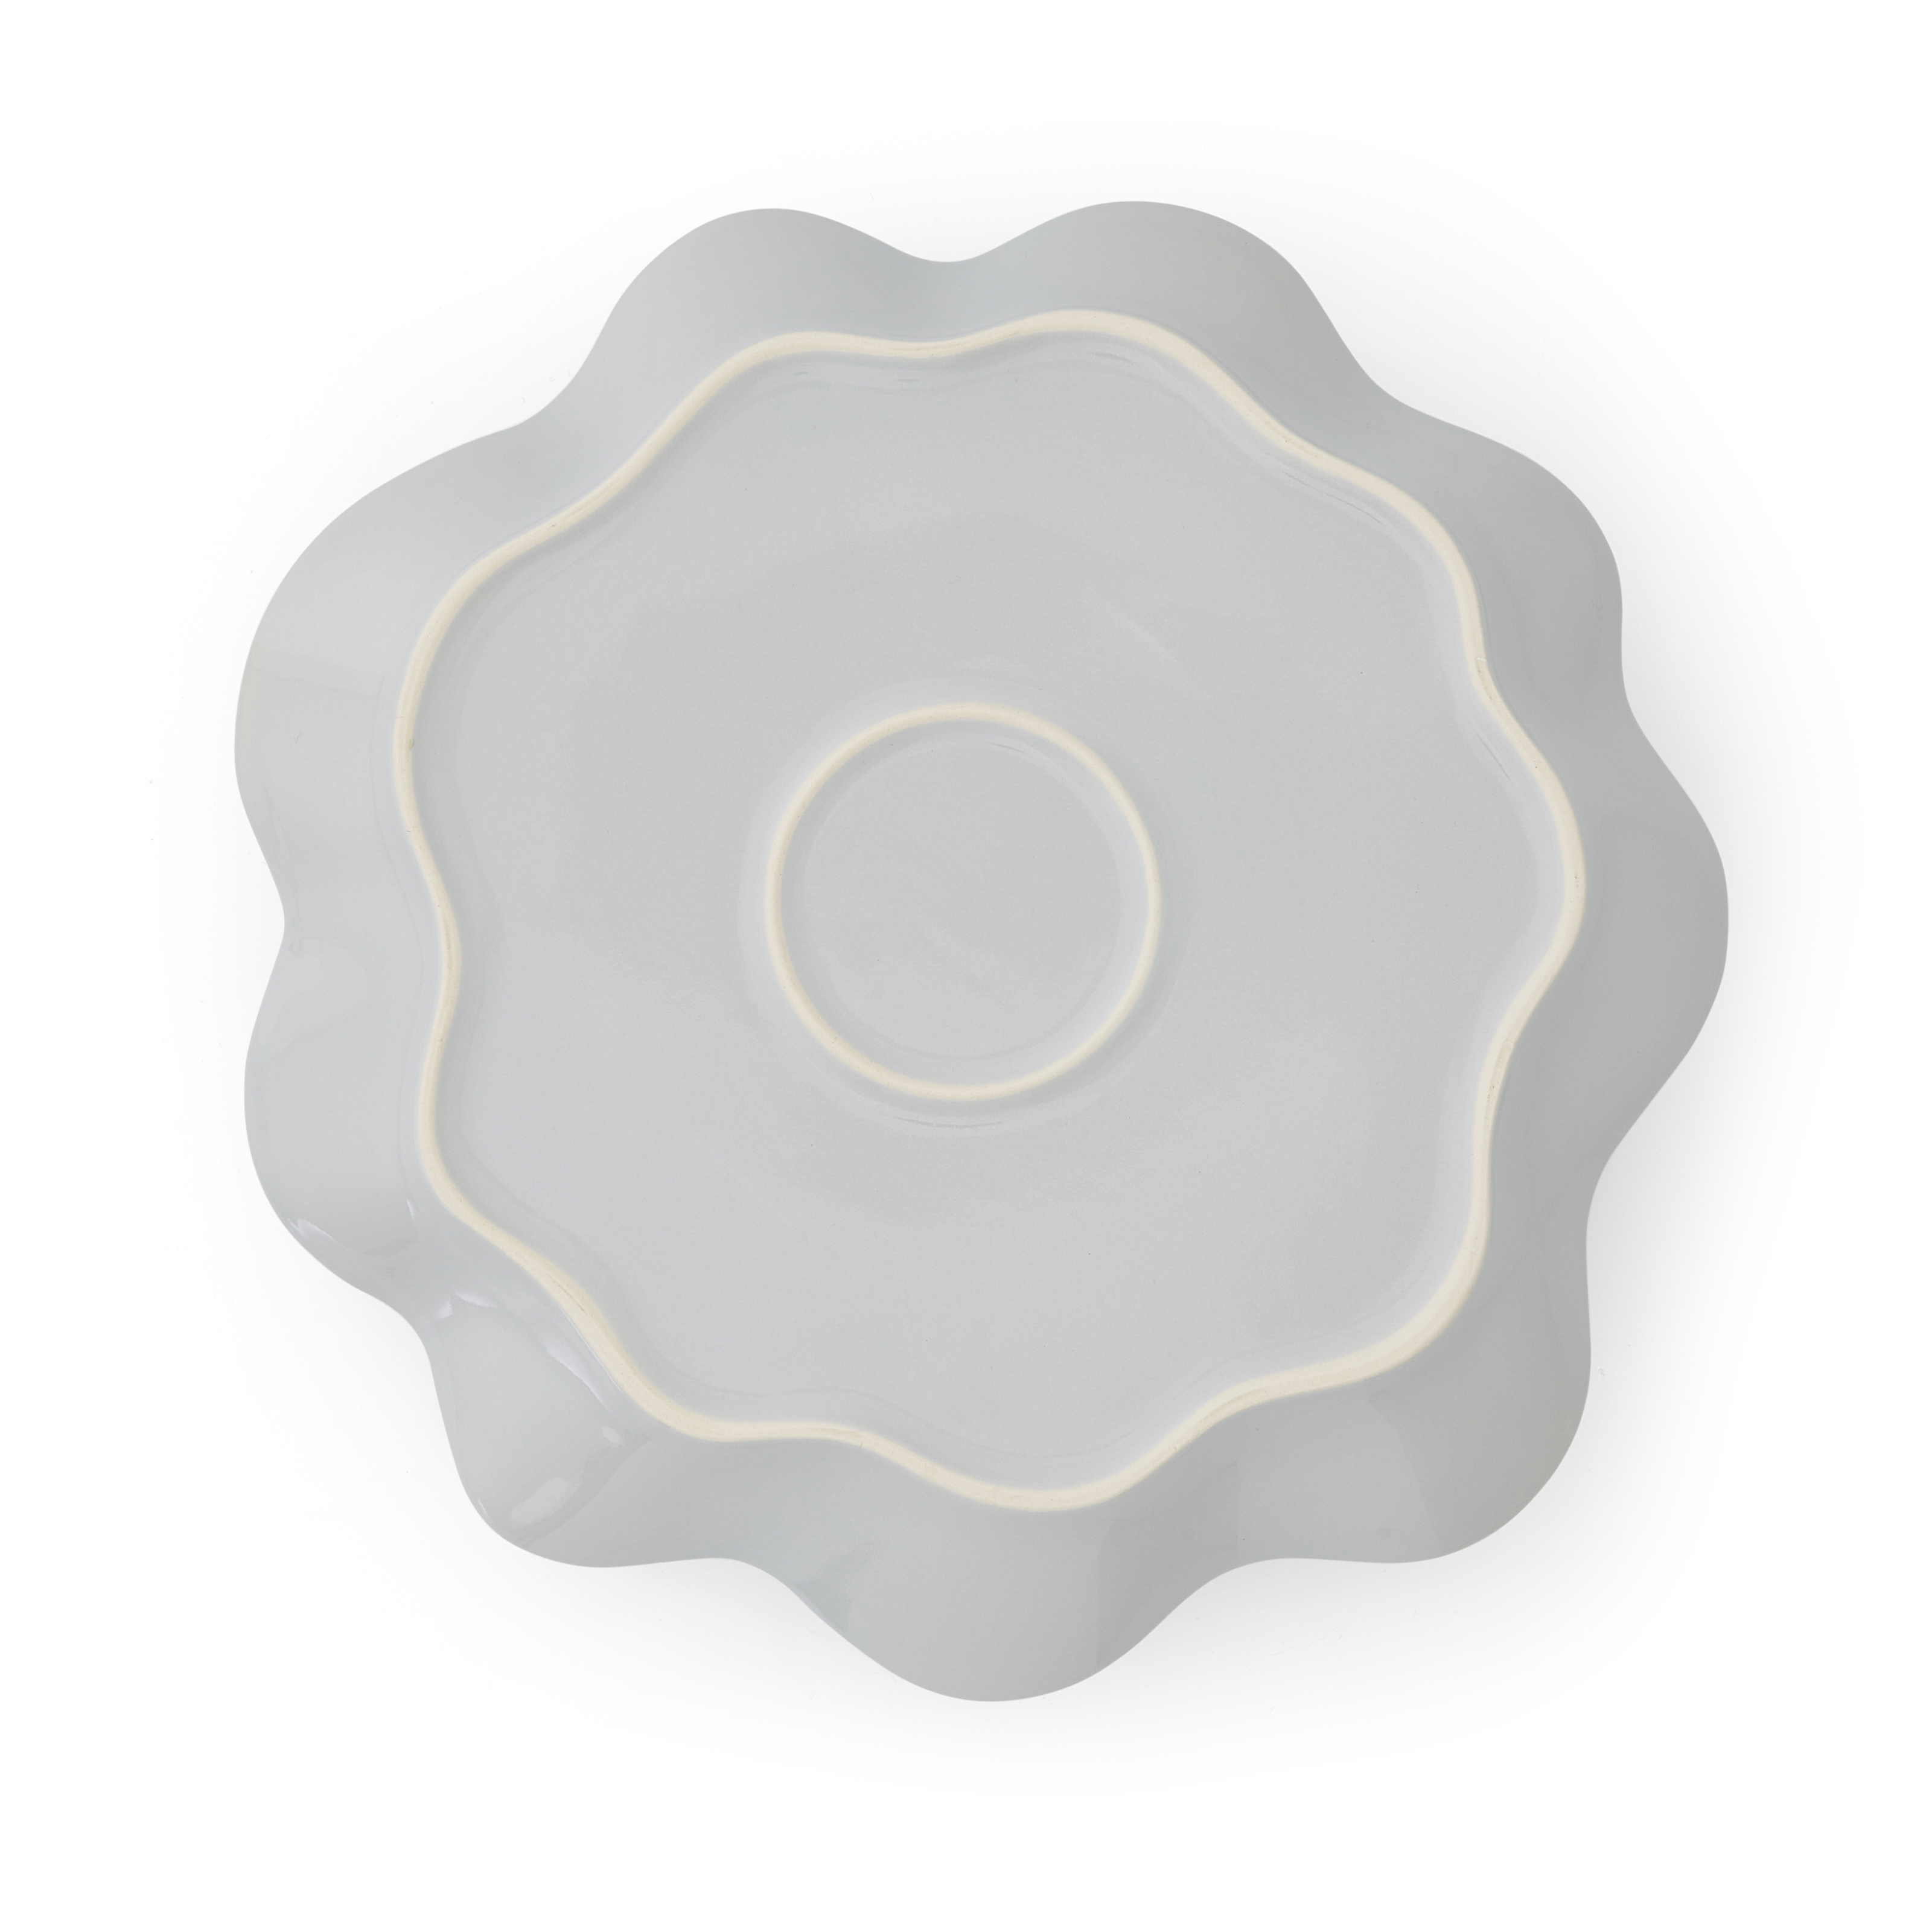 Sophie Conran Floret Large Serving Platter, Dove Grey image number null